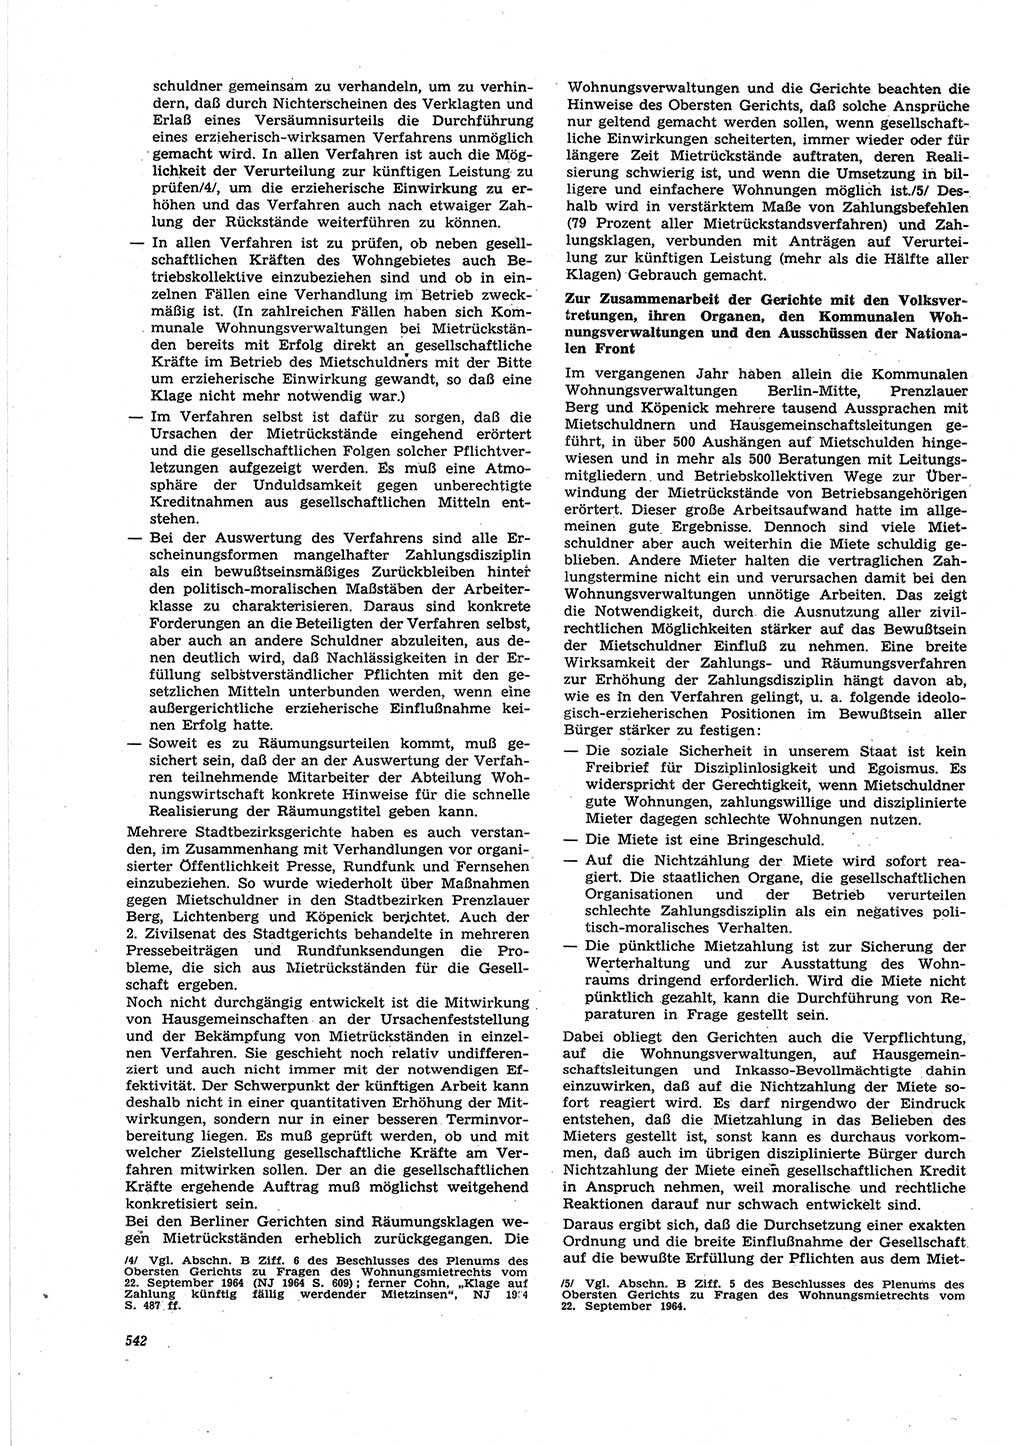 Neue Justiz (NJ), Zeitschrift für Recht und Rechtswissenschaft [Deutsche Demokratische Republik (DDR)], 25. Jahrgang 1971, Seite 542 (NJ DDR 1971, S. 542)